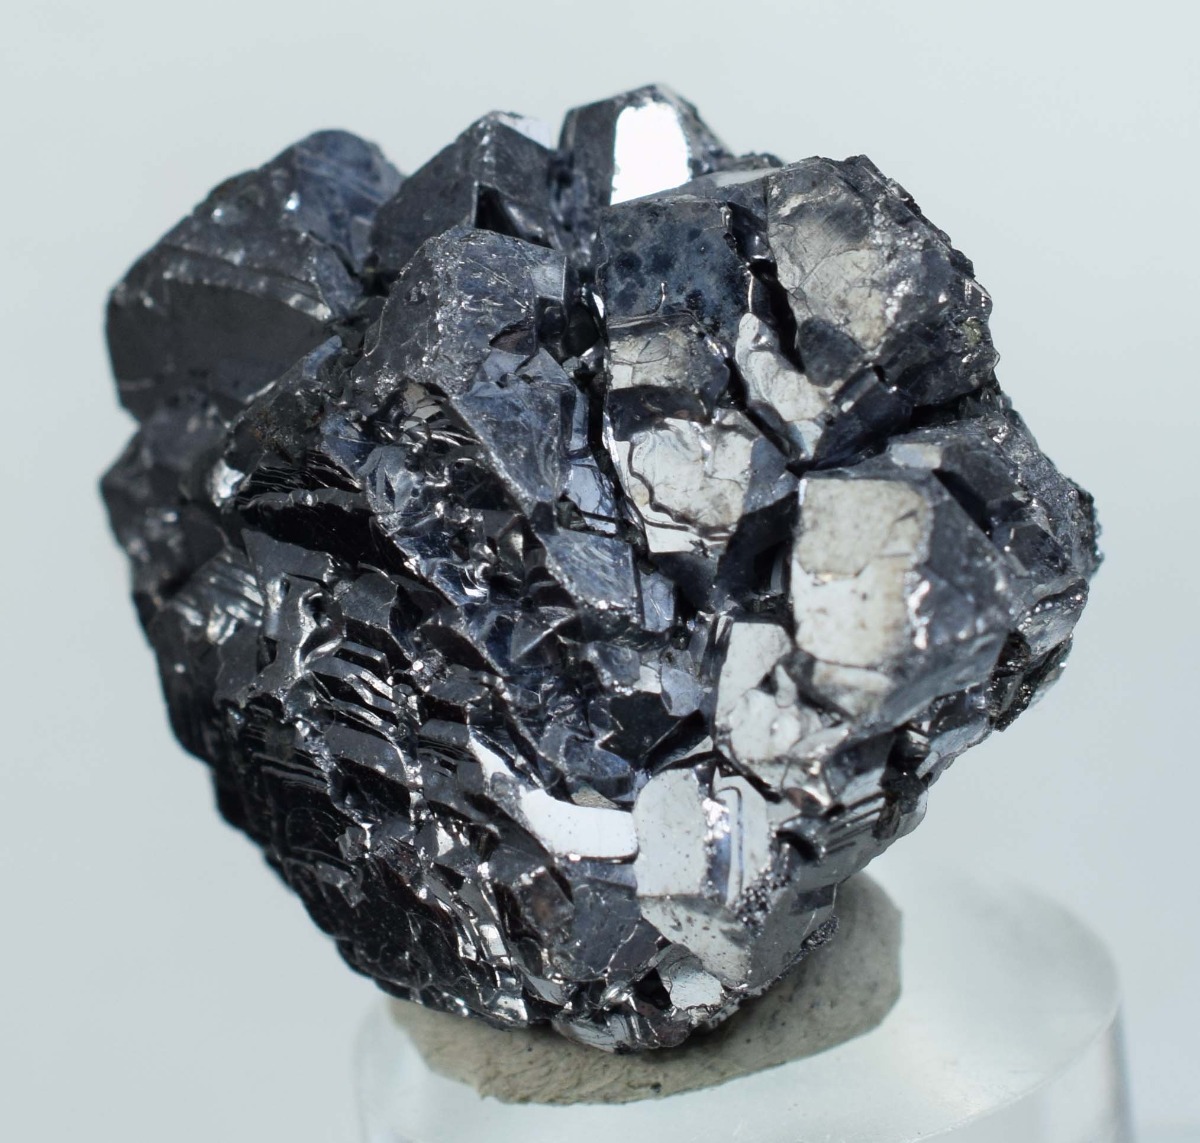 3 6cms Galena Mineral  Cristal Semipreciosa A163 S 35 00 